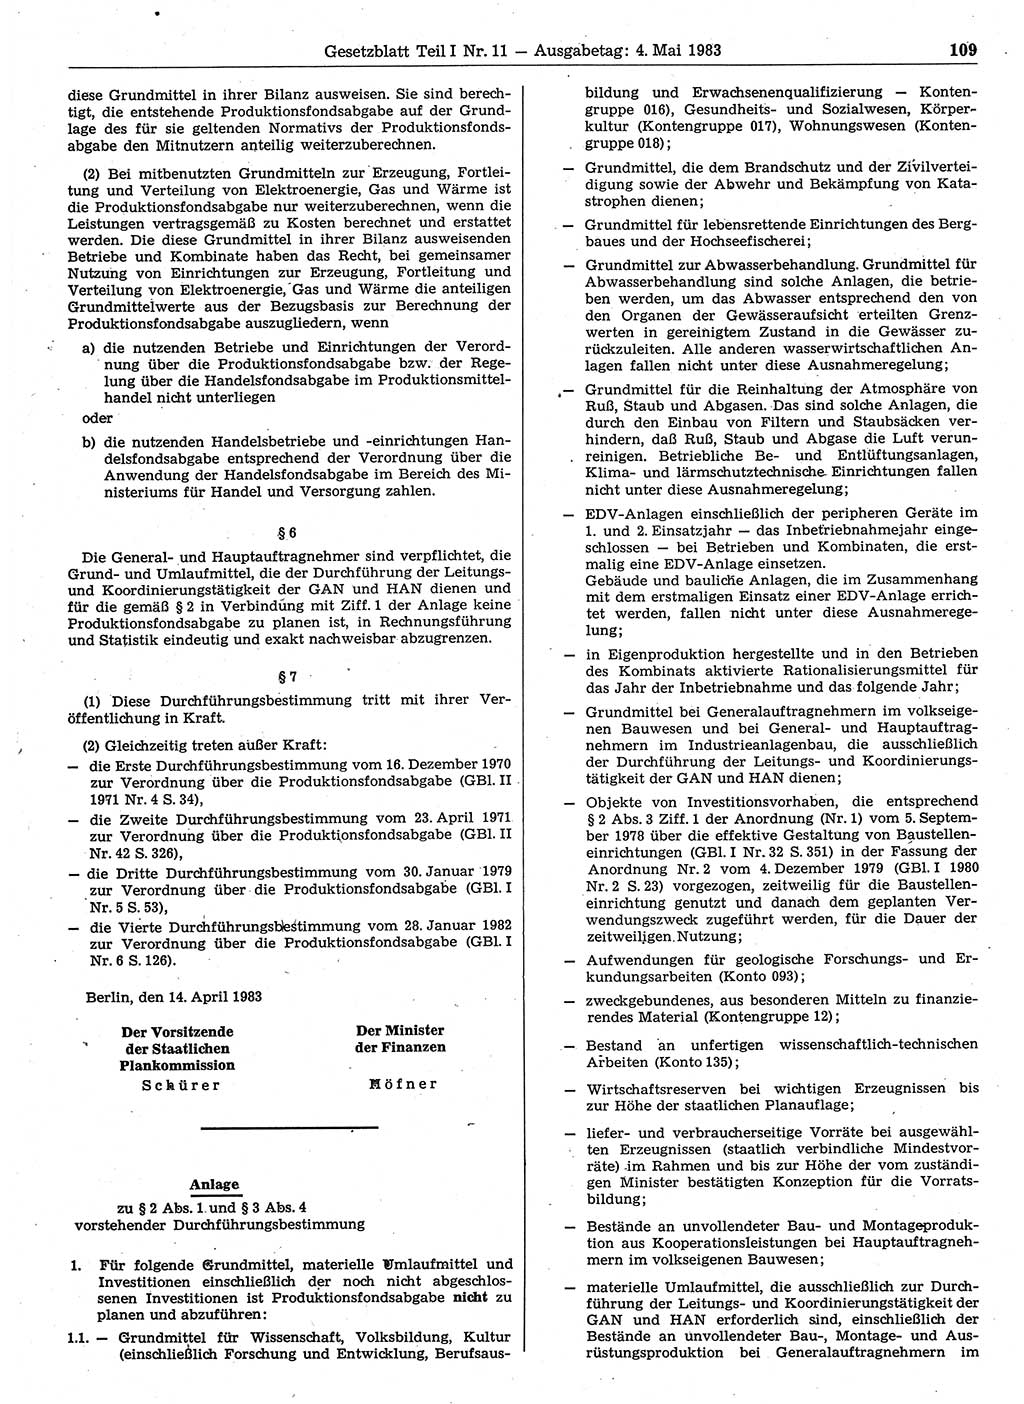 Gesetzblatt (GBl.) der Deutschen Demokratischen Republik (DDR) Teil Ⅰ 1983, Seite 109 (GBl. DDR Ⅰ 1983, S. 109)